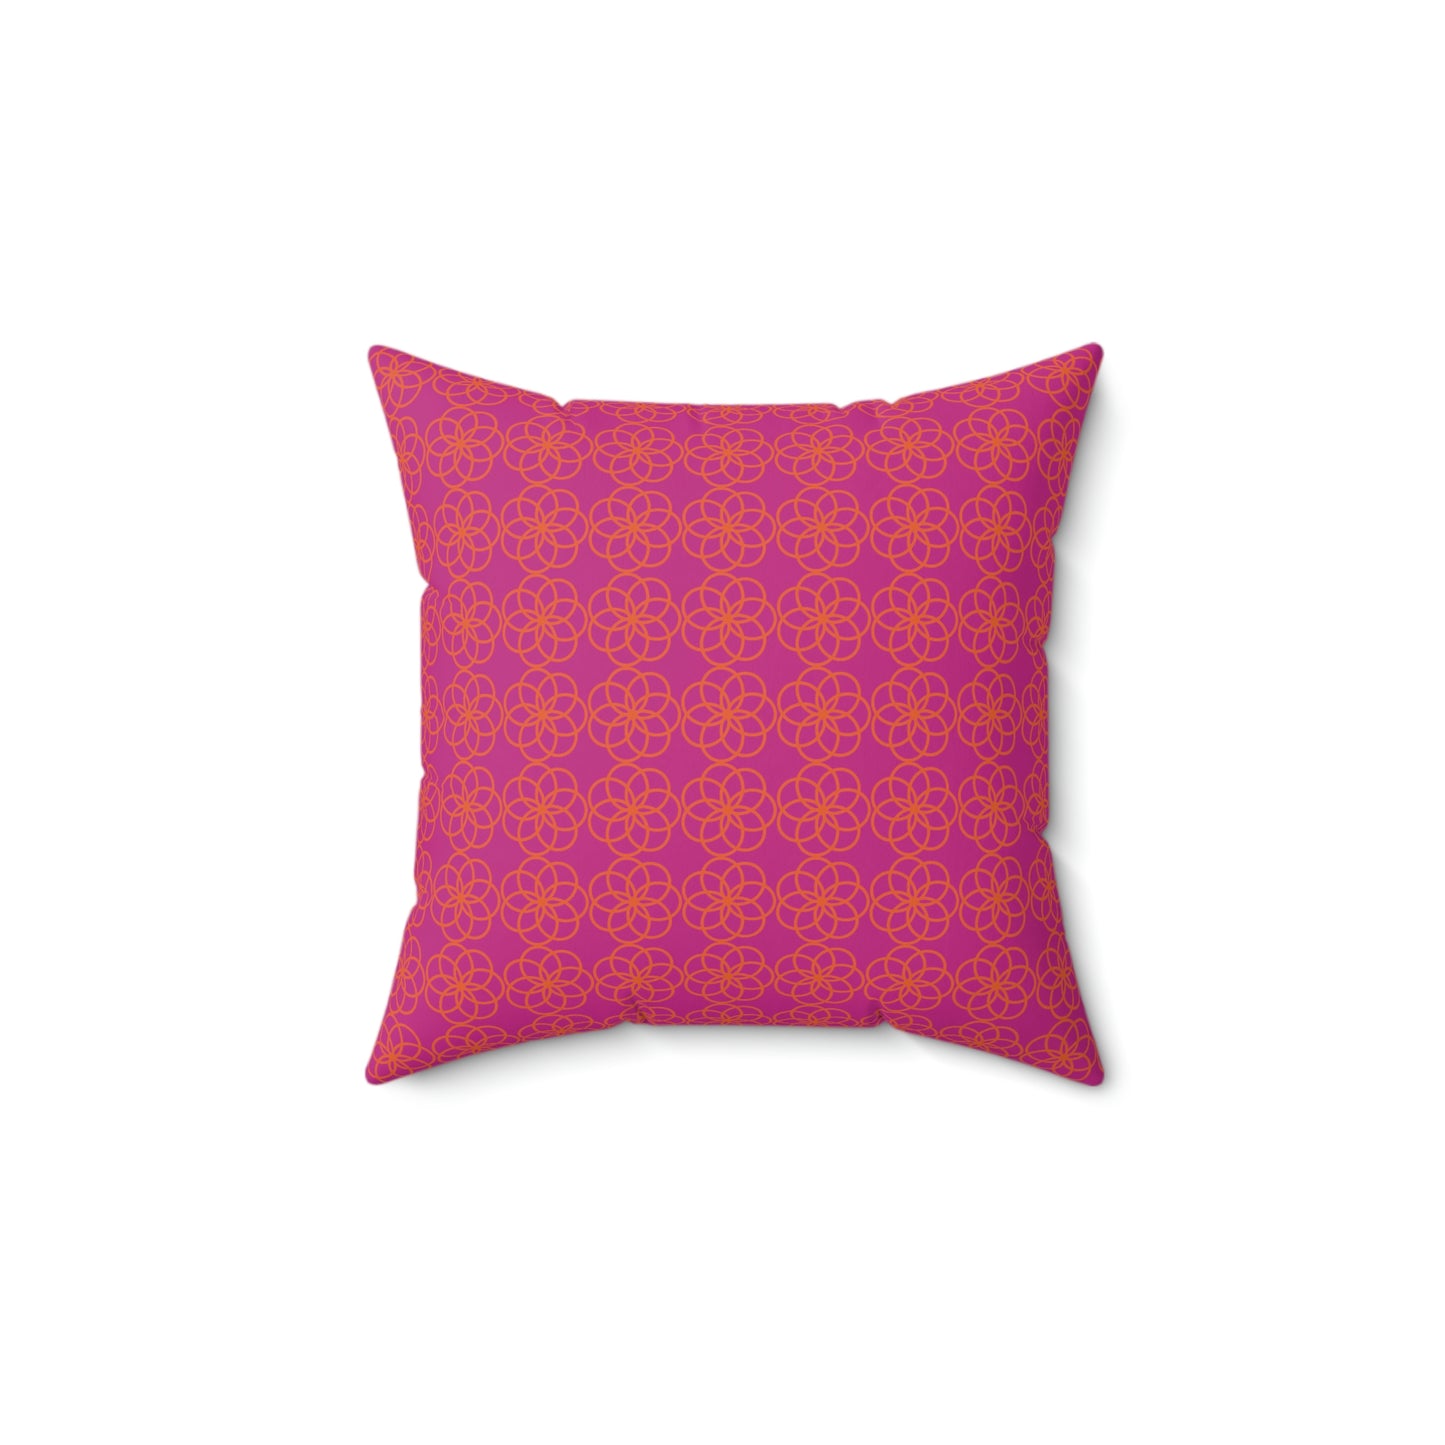 Spun Polyester Square Pillow Case “Spiral Circles on Pink”